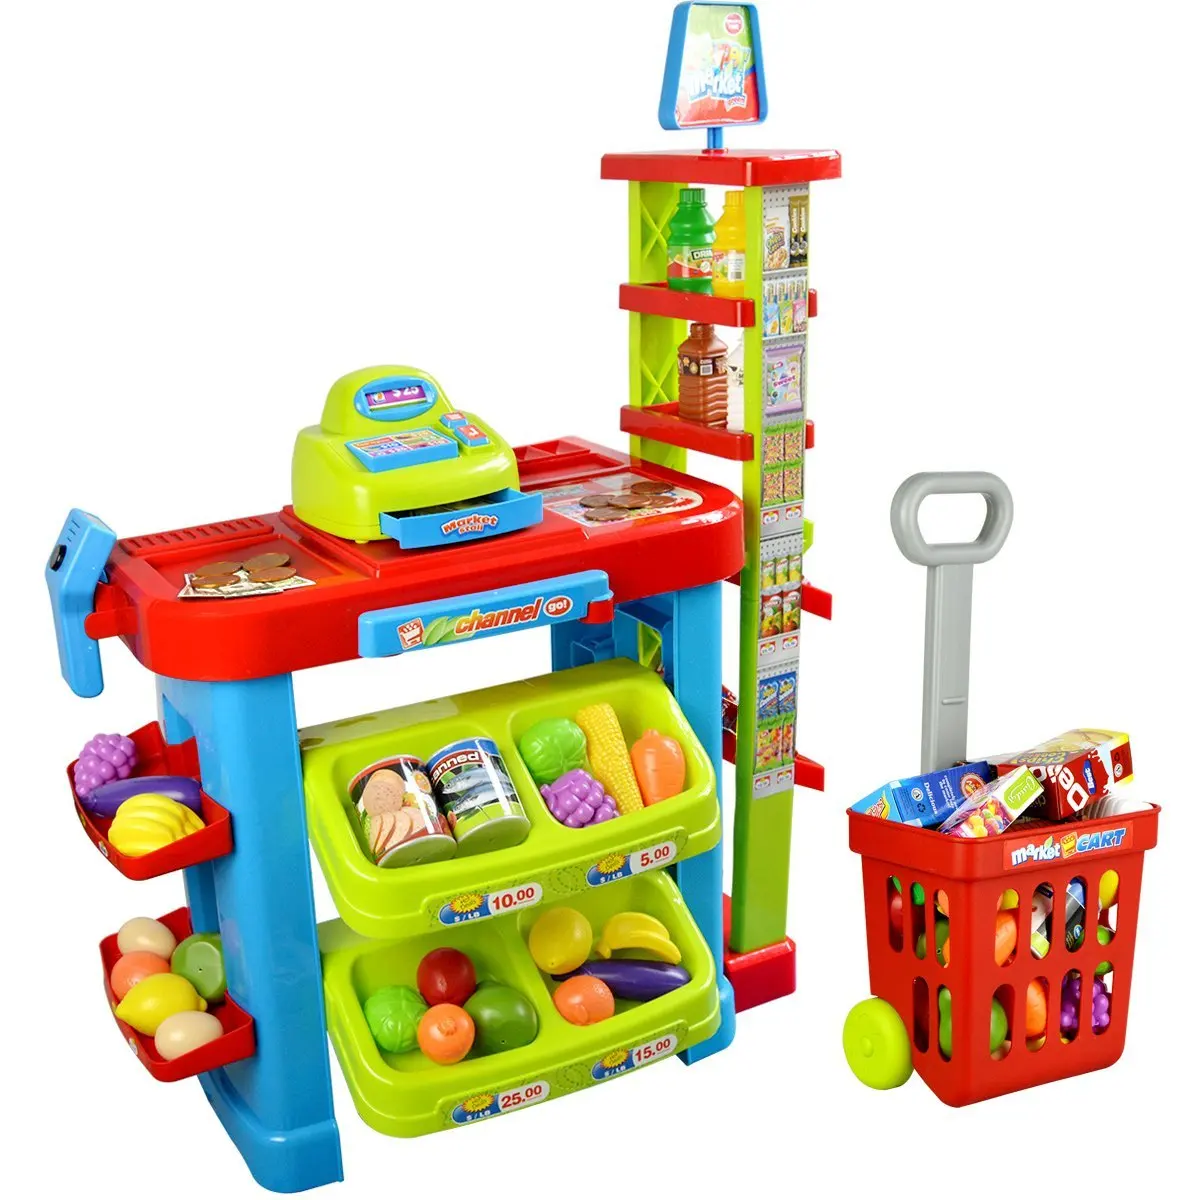 Детский игрушечный набор. Магазин Shantou Gepai 100006291. 100006291 Игровой набор магазин. Игровой набор супермаркет 668-78. Игровой набор магазин супермаркет.